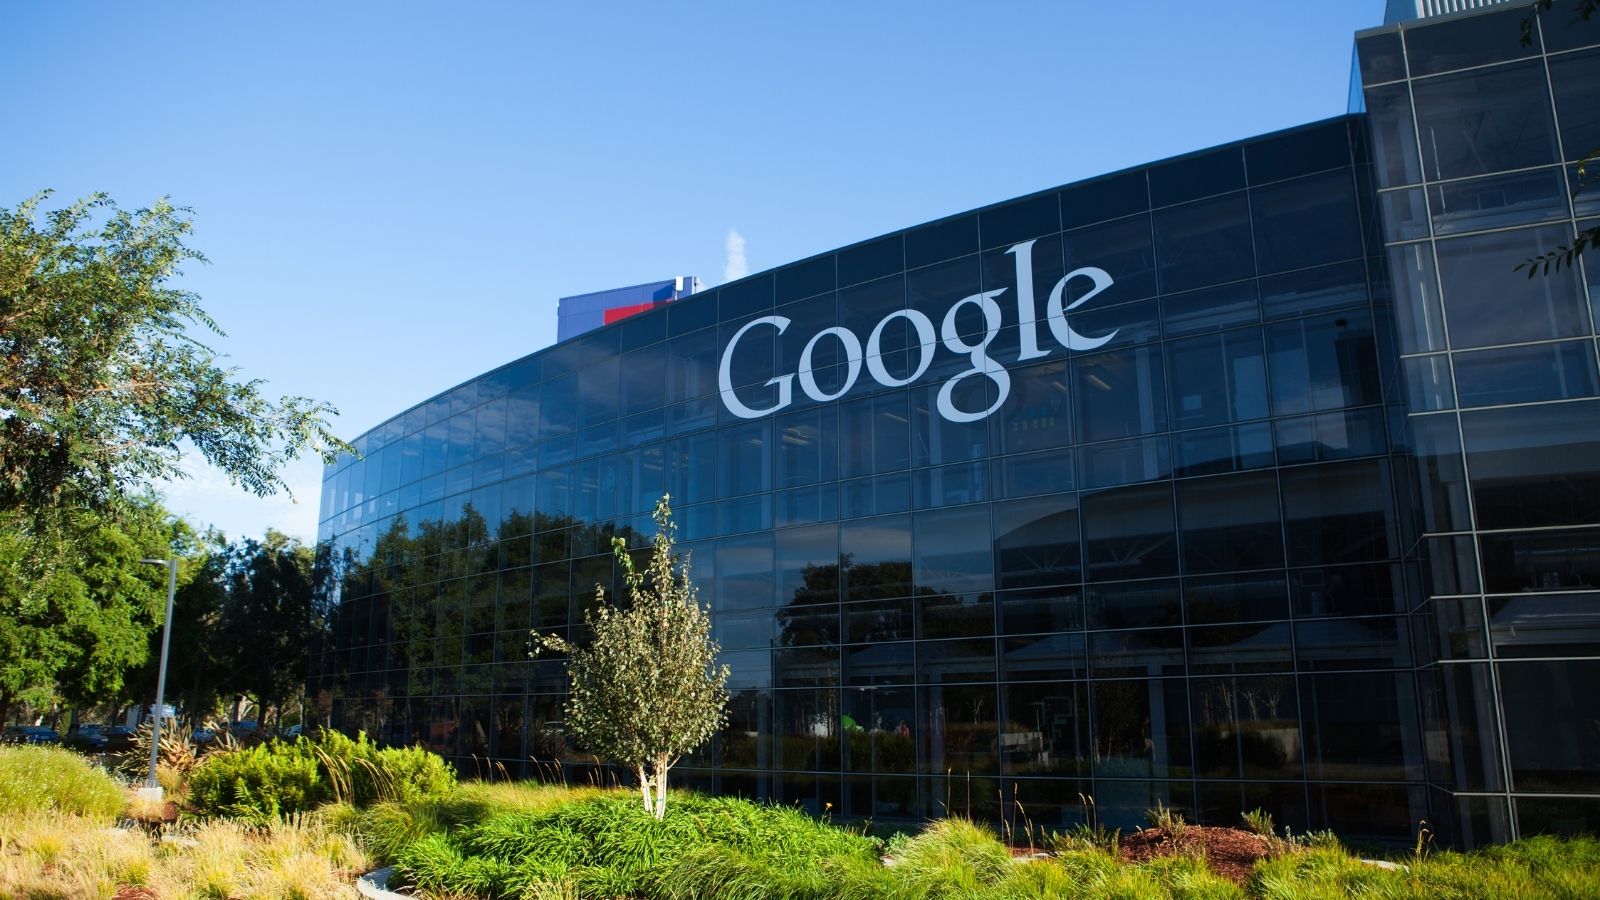 Google rozstrzygnął przetarg! Google mediarun google corporate